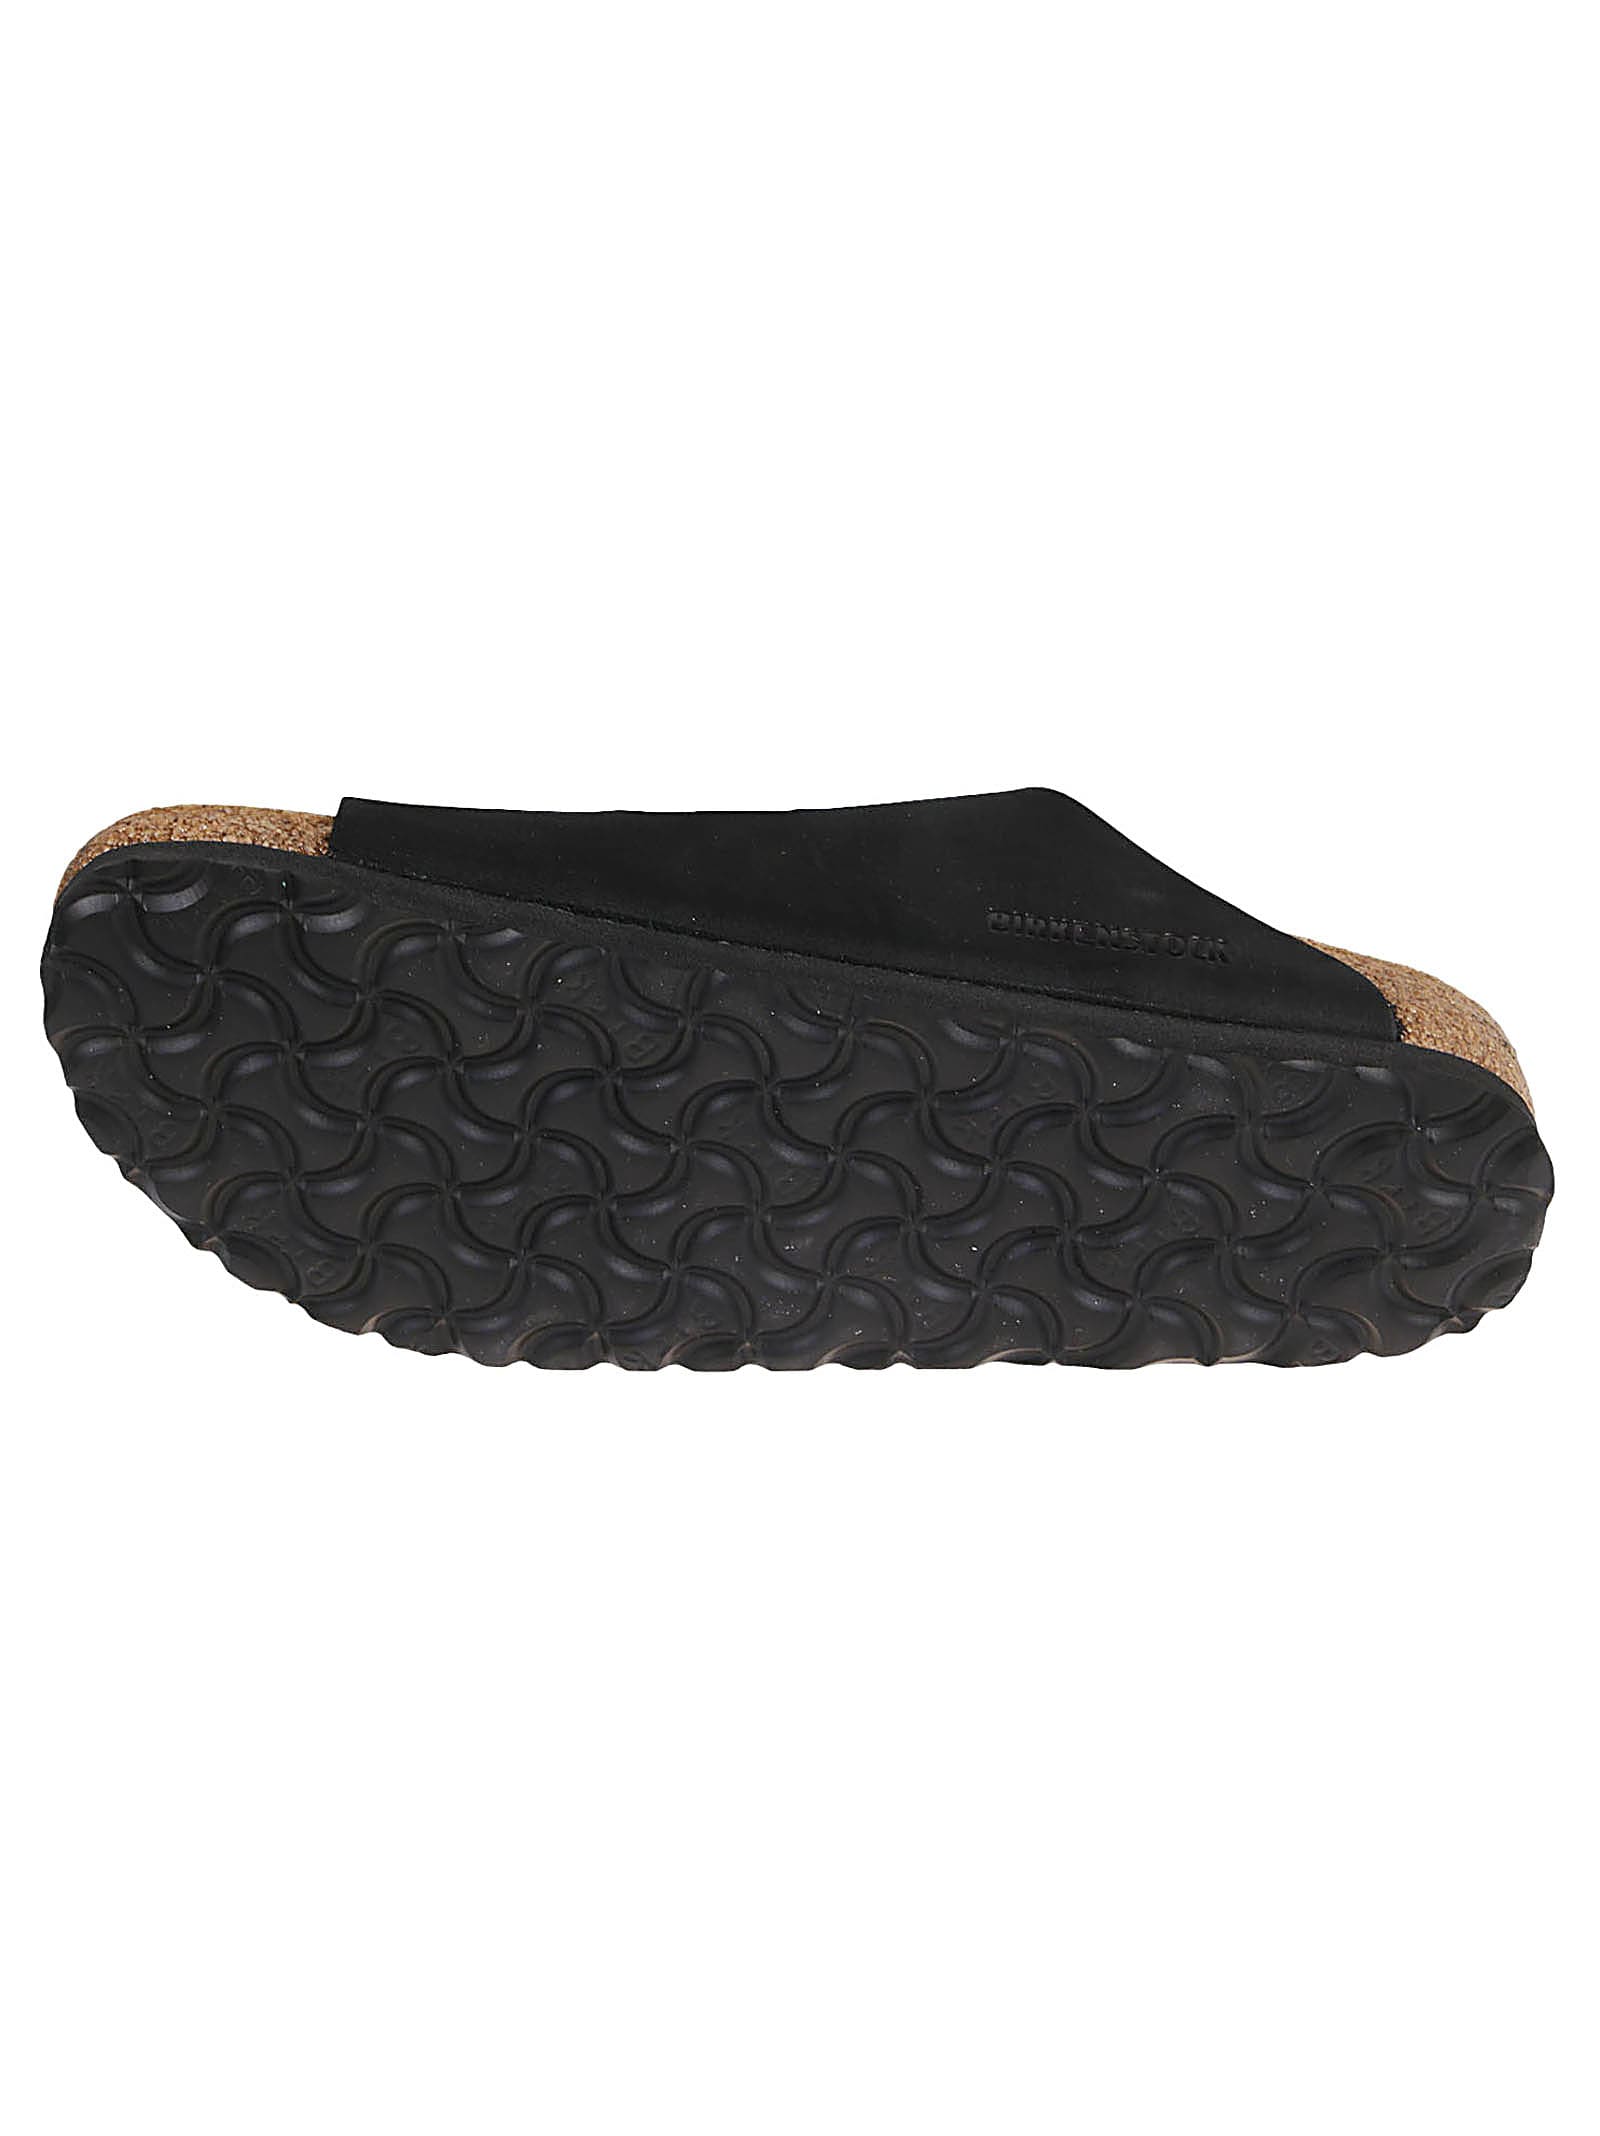 Shop Birkenstock Arizona Big Buckle Sandals In Black